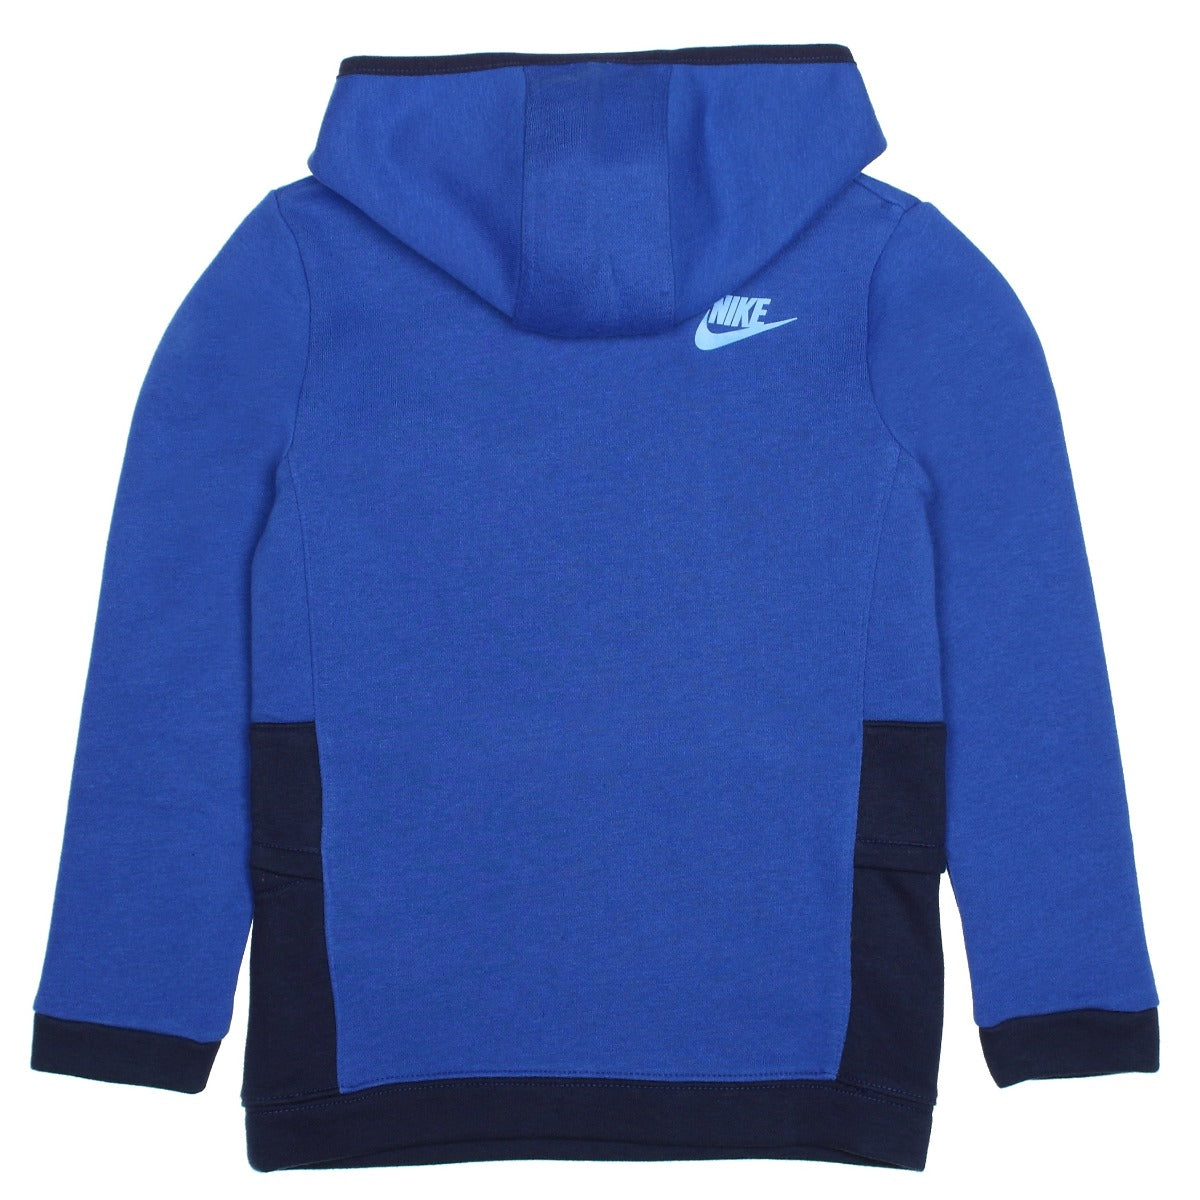 Sweat Nike Sportswear Ampliffy Enfant - Bleu